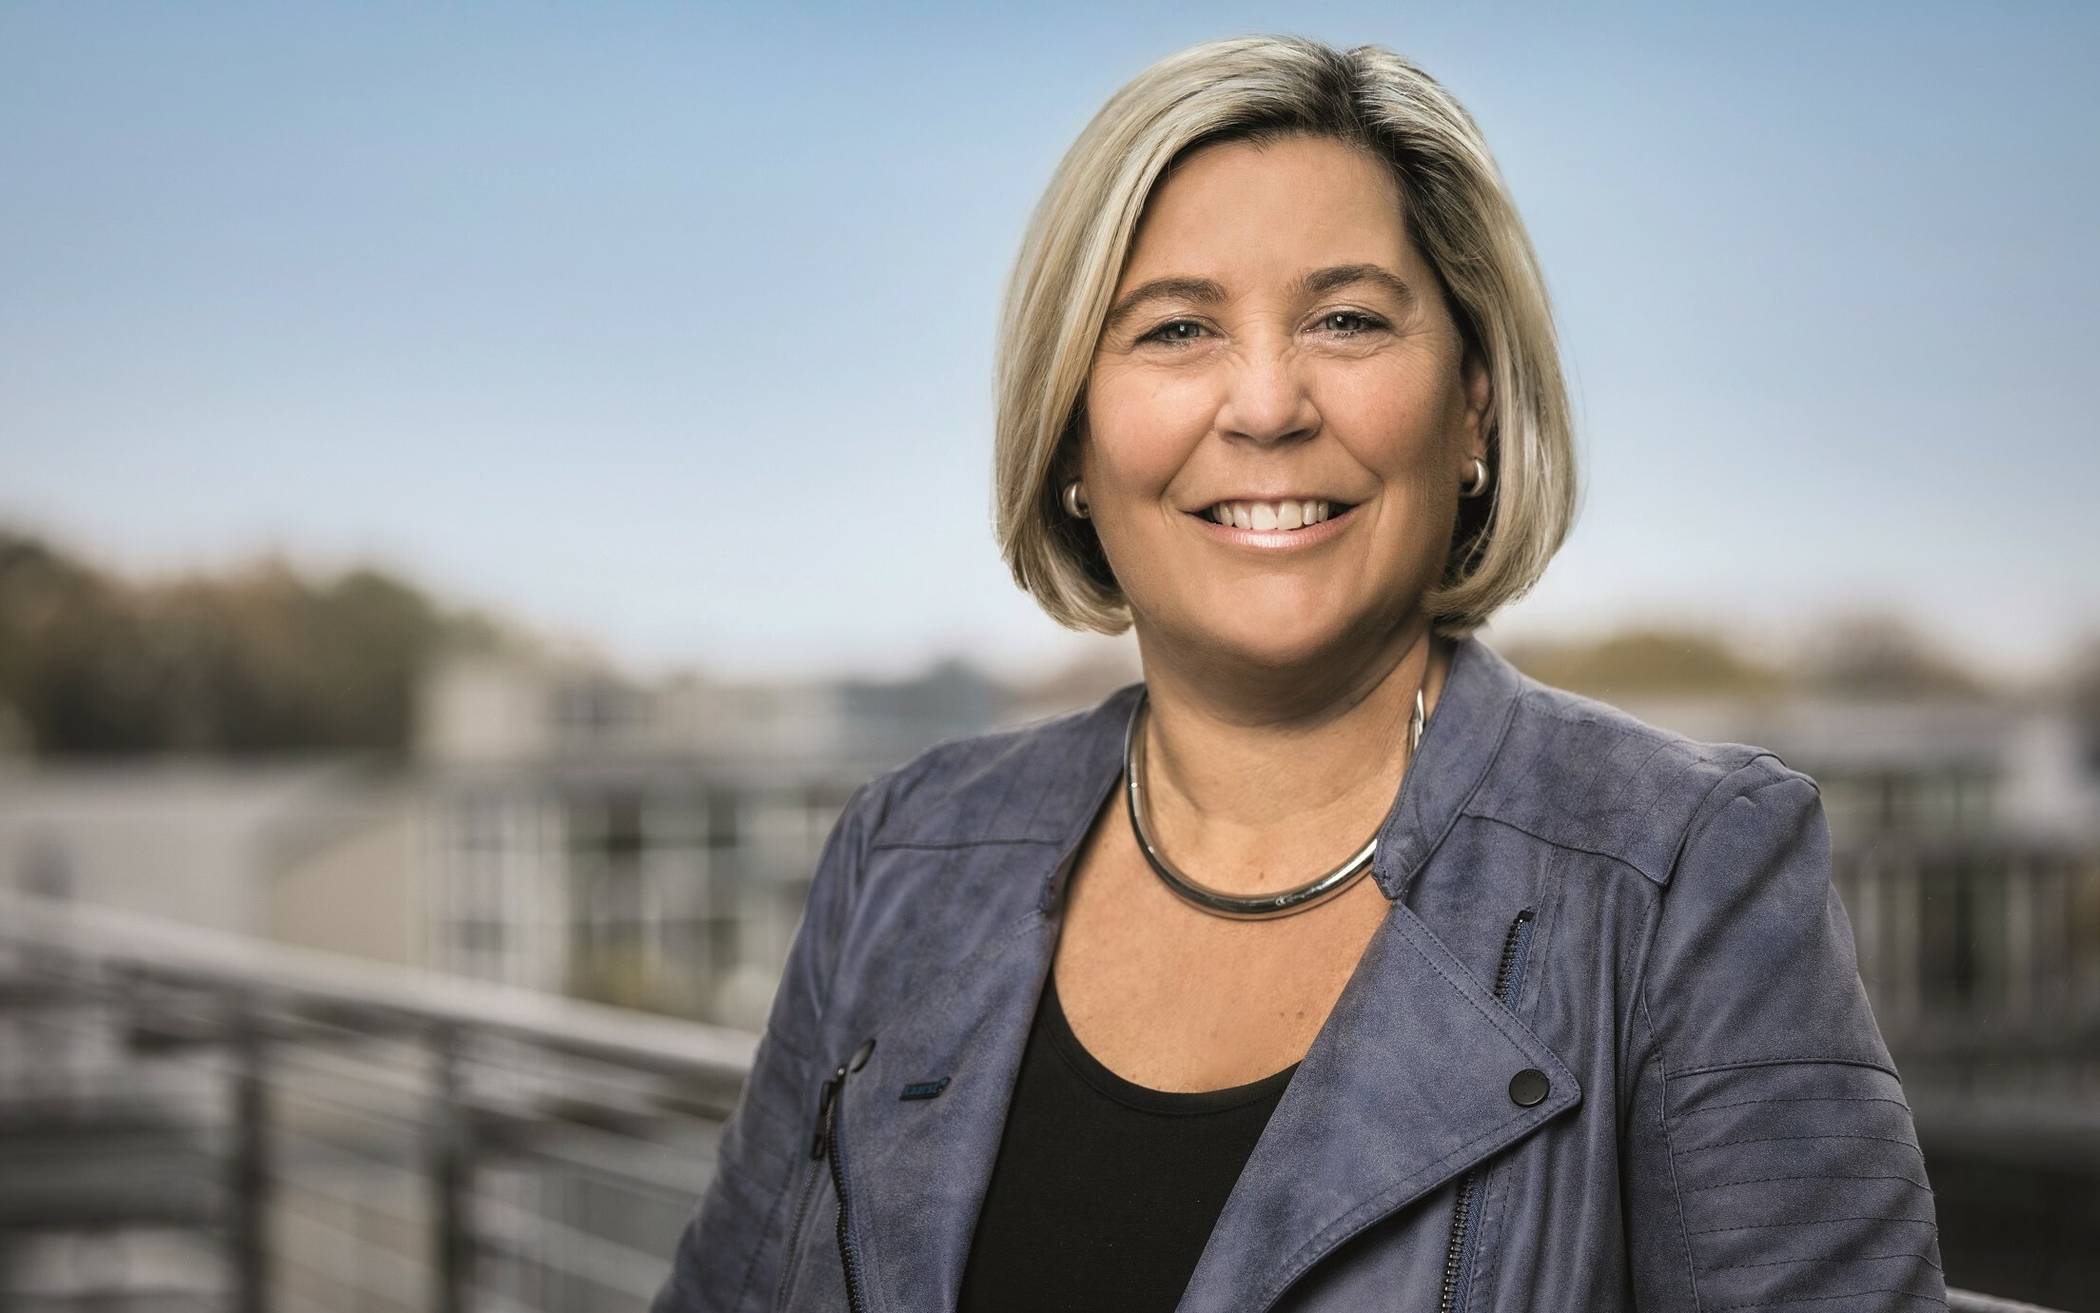  Die Kaarster Bürgermeisterin Ursula Baum.  